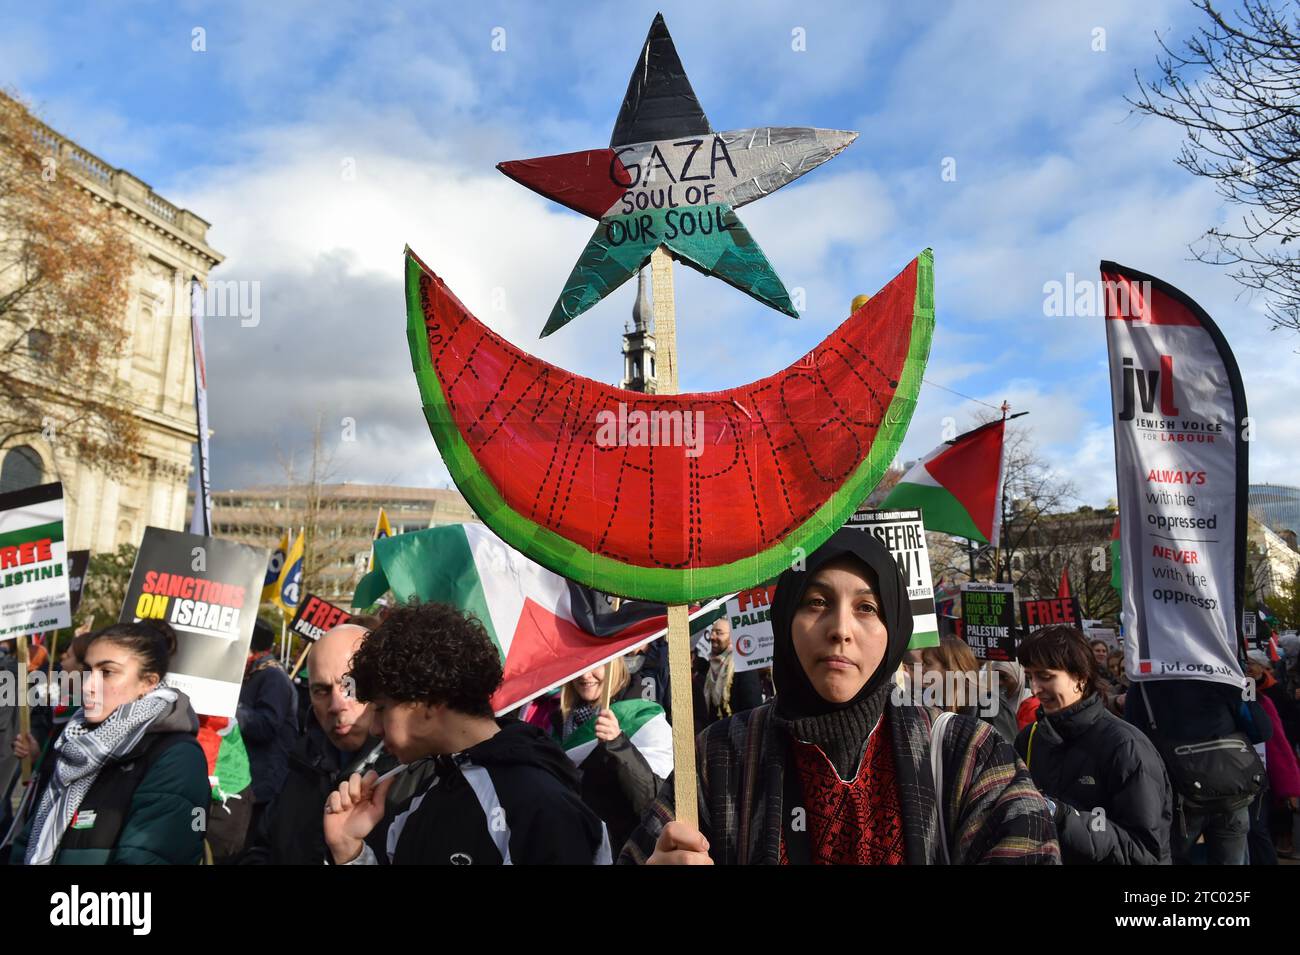 Der Demonstrant hält ein Plakat bei der Demonstration. Demonstranten versammelten sich in der Bank Junction, London, als Teil des National March for Palestine, um für einen vollständigen Waffenstillstand und ein sofortiges Ende des Krieges in Gaza zu plädieren. Die von der Palästinensischen Solidaritätskampagne organisierte Demonstration wird von verschiedenen propalästinensischen Gruppen unterstützt, darunter Freunde von Al-Aqsa, Stop the war Coalition und das Palästinensische Forum in Großbritannien. Die Demonstranten marschieren durch das Zentrum Londons und rufen Frieden und Solidarität mit dem palästinensischen Volk auf. Stockfoto